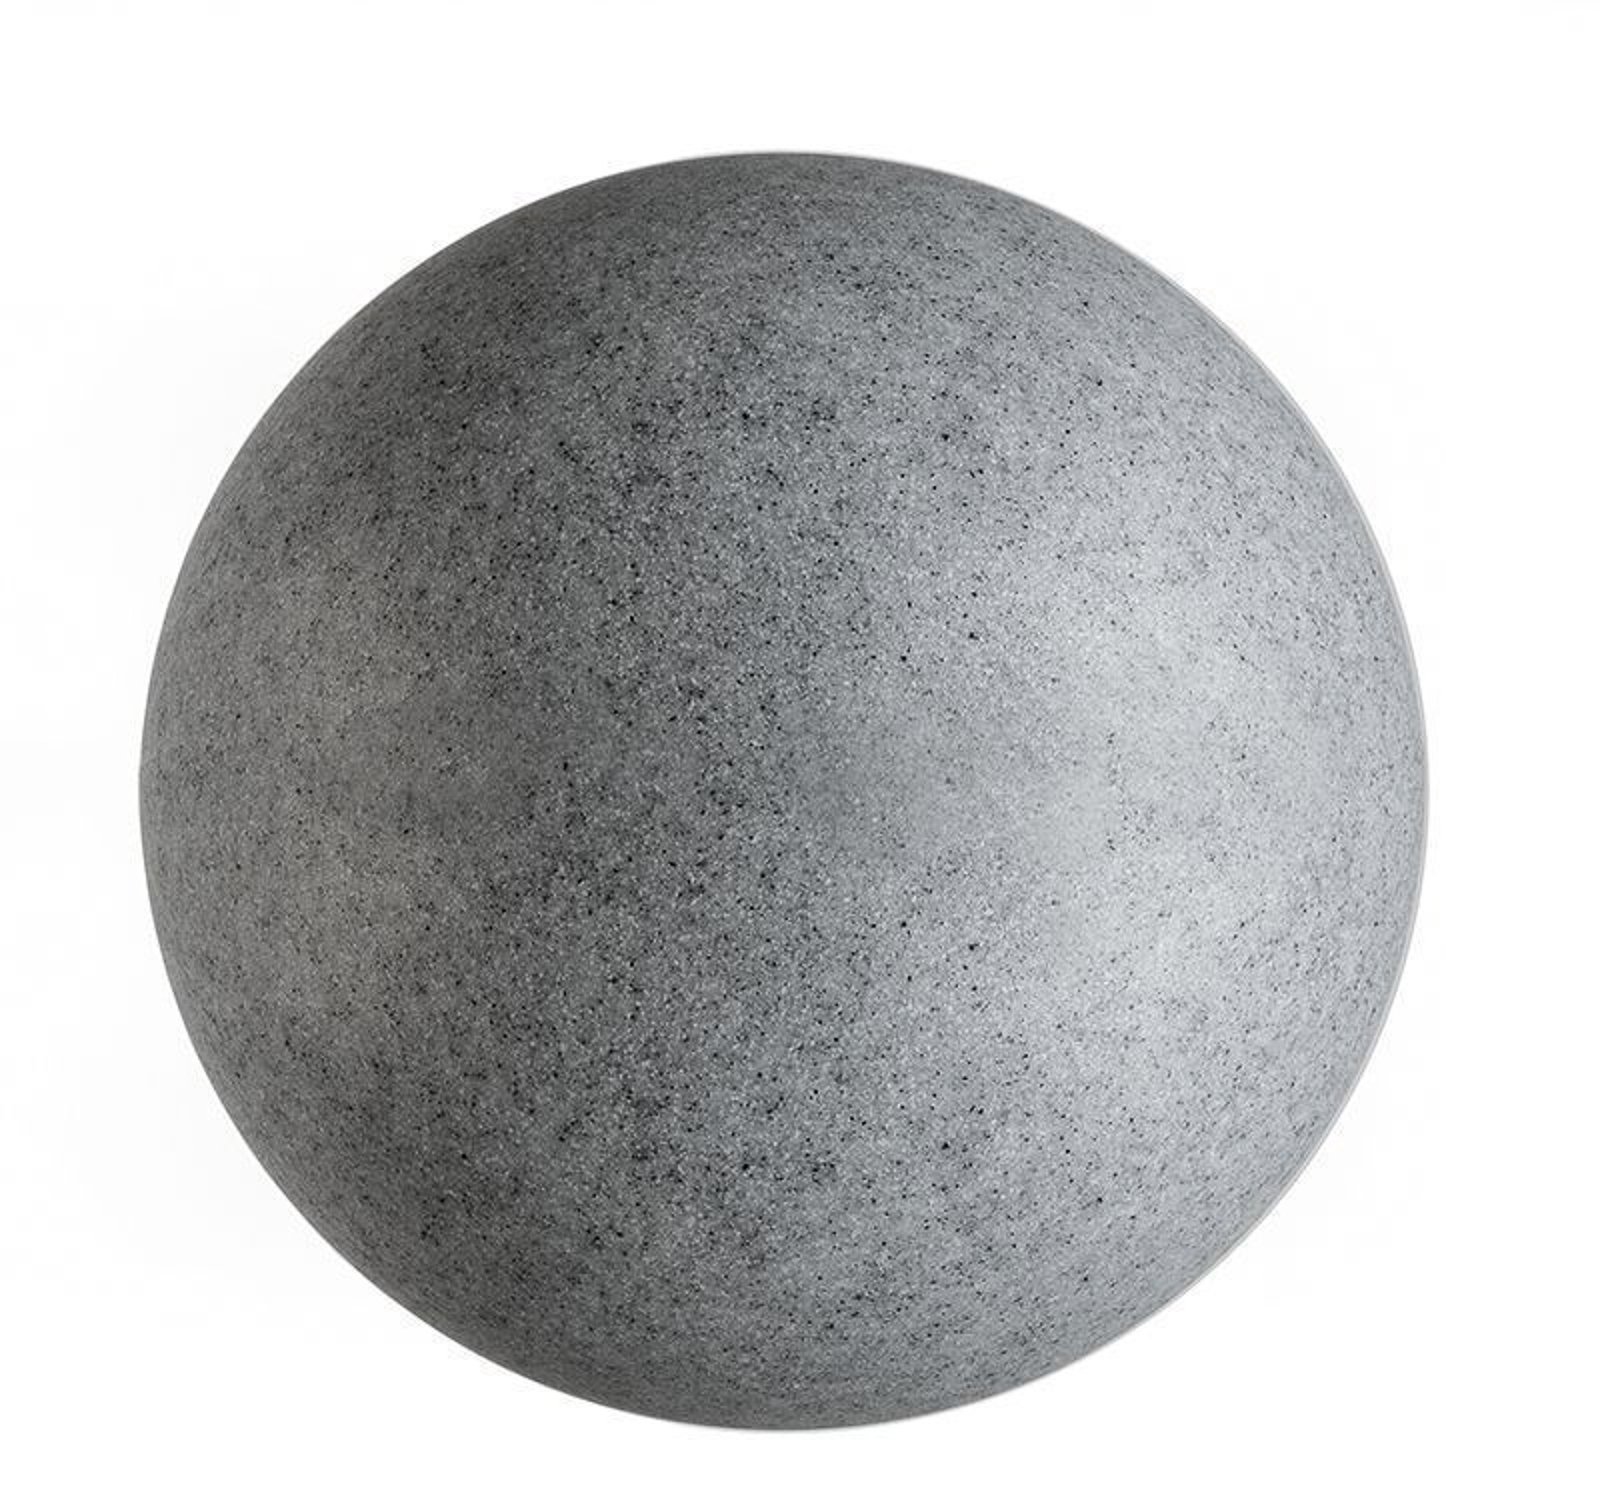 Lâmpada globo de exterior com espigão, granito, Ø 45cm